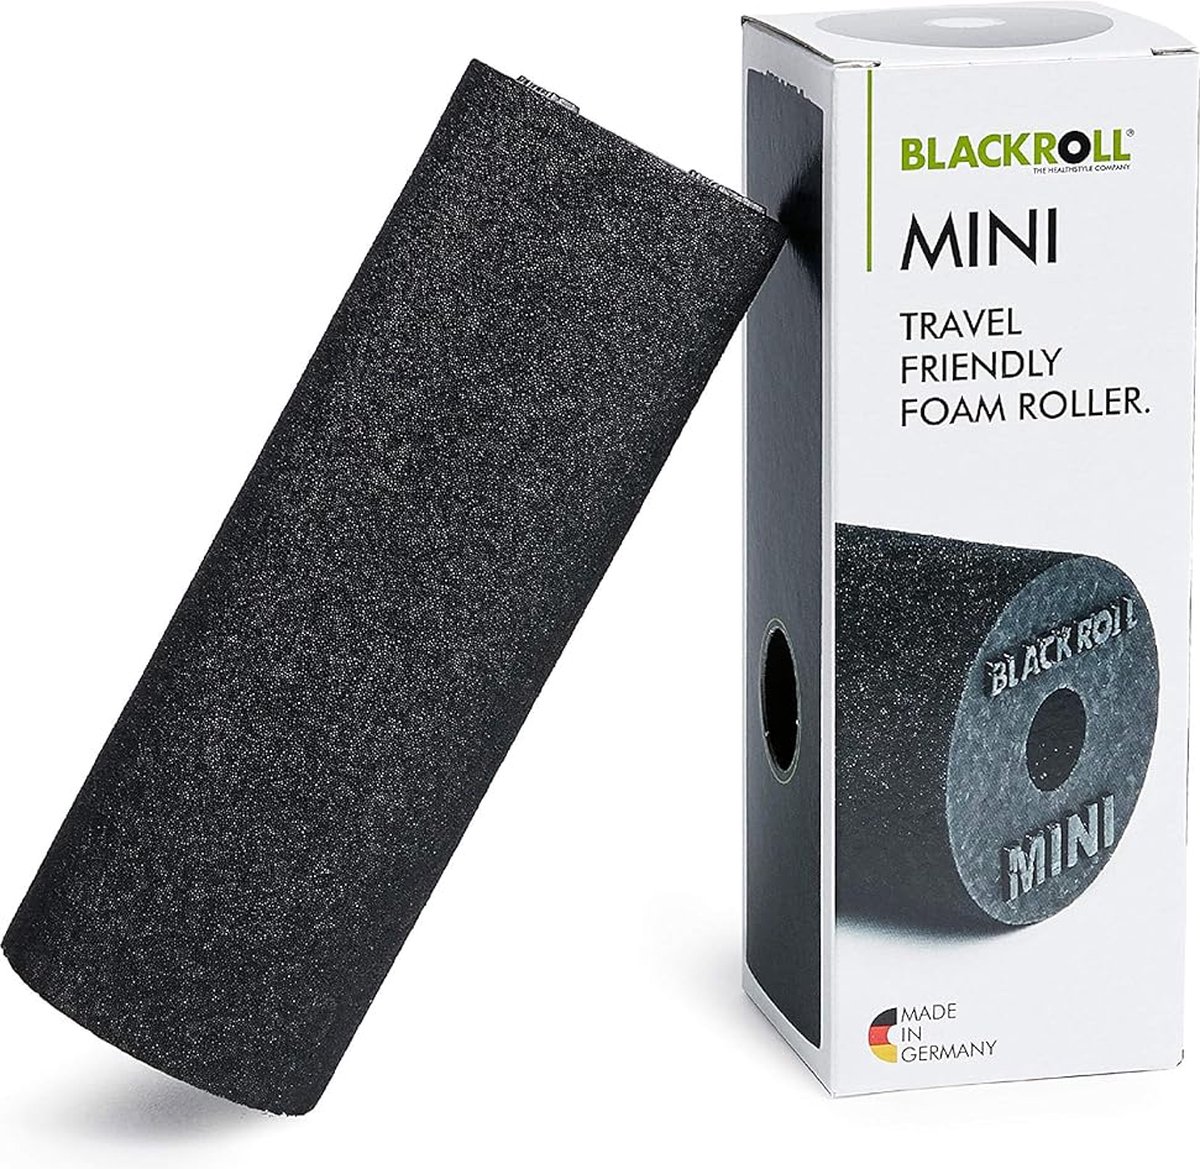 BLACKROLL® MINI foamroller voor gerichte zelfmassage van spieren - zwart, 15 cm x 5 cm